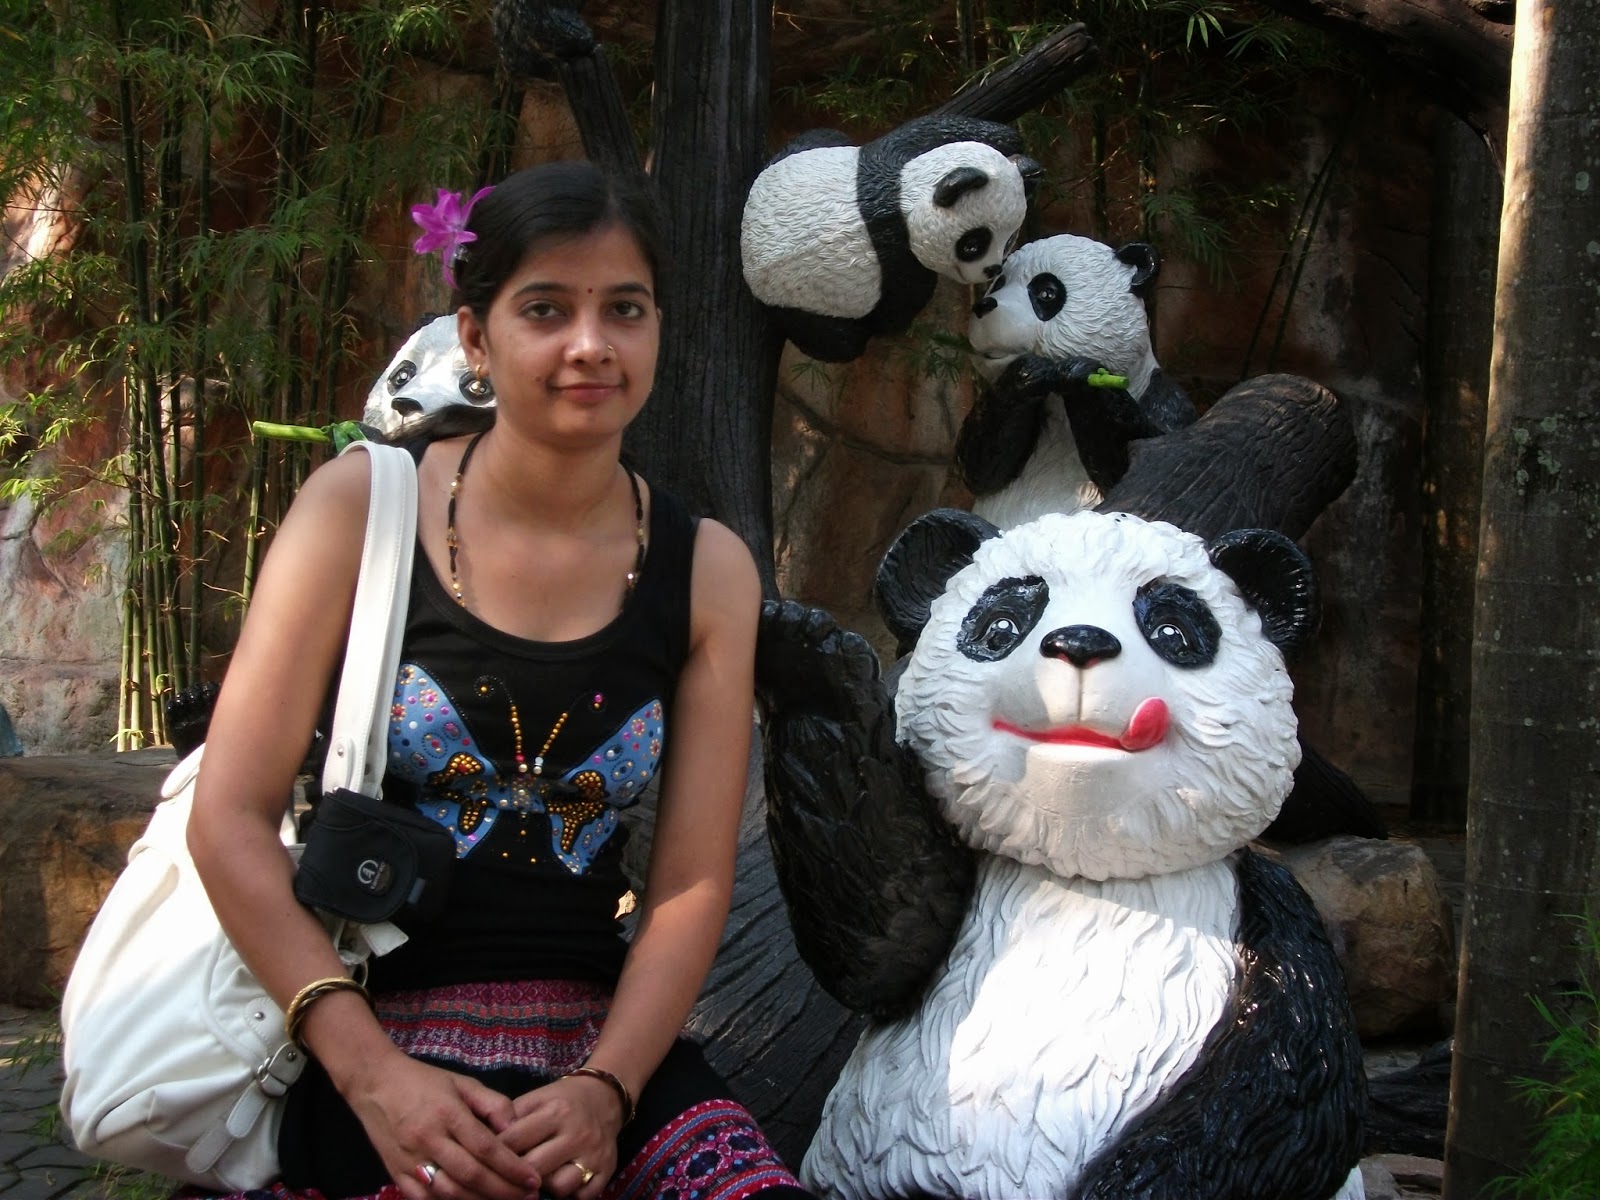 statue of panda at Nong Nooch Tropical Garden.